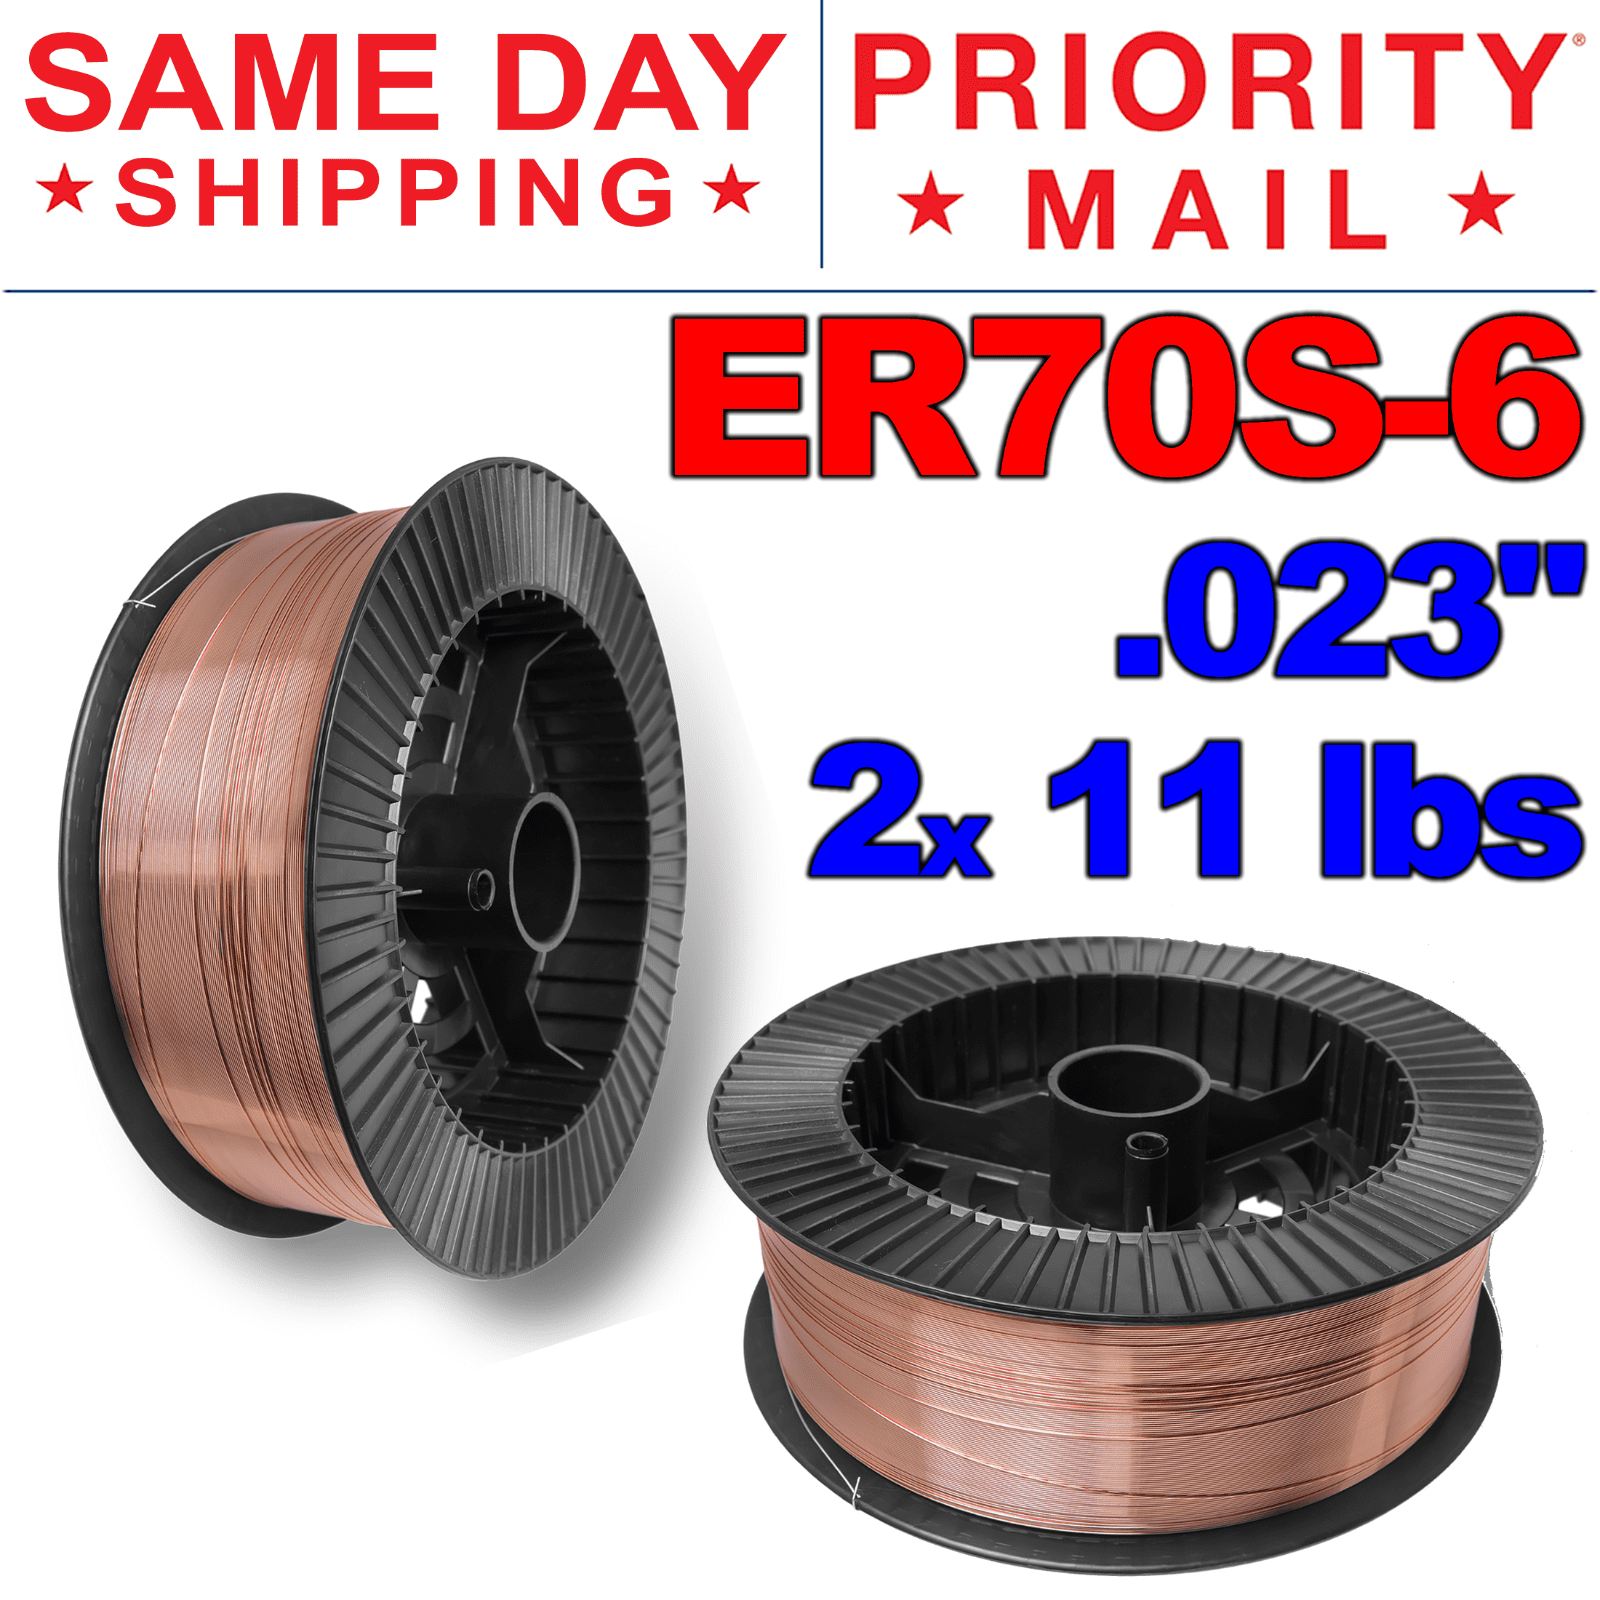 ER70S-6 .023 Mild Steel MIG Welding Wire PGN 0.6 mm 2x 11 Lbs Spool 